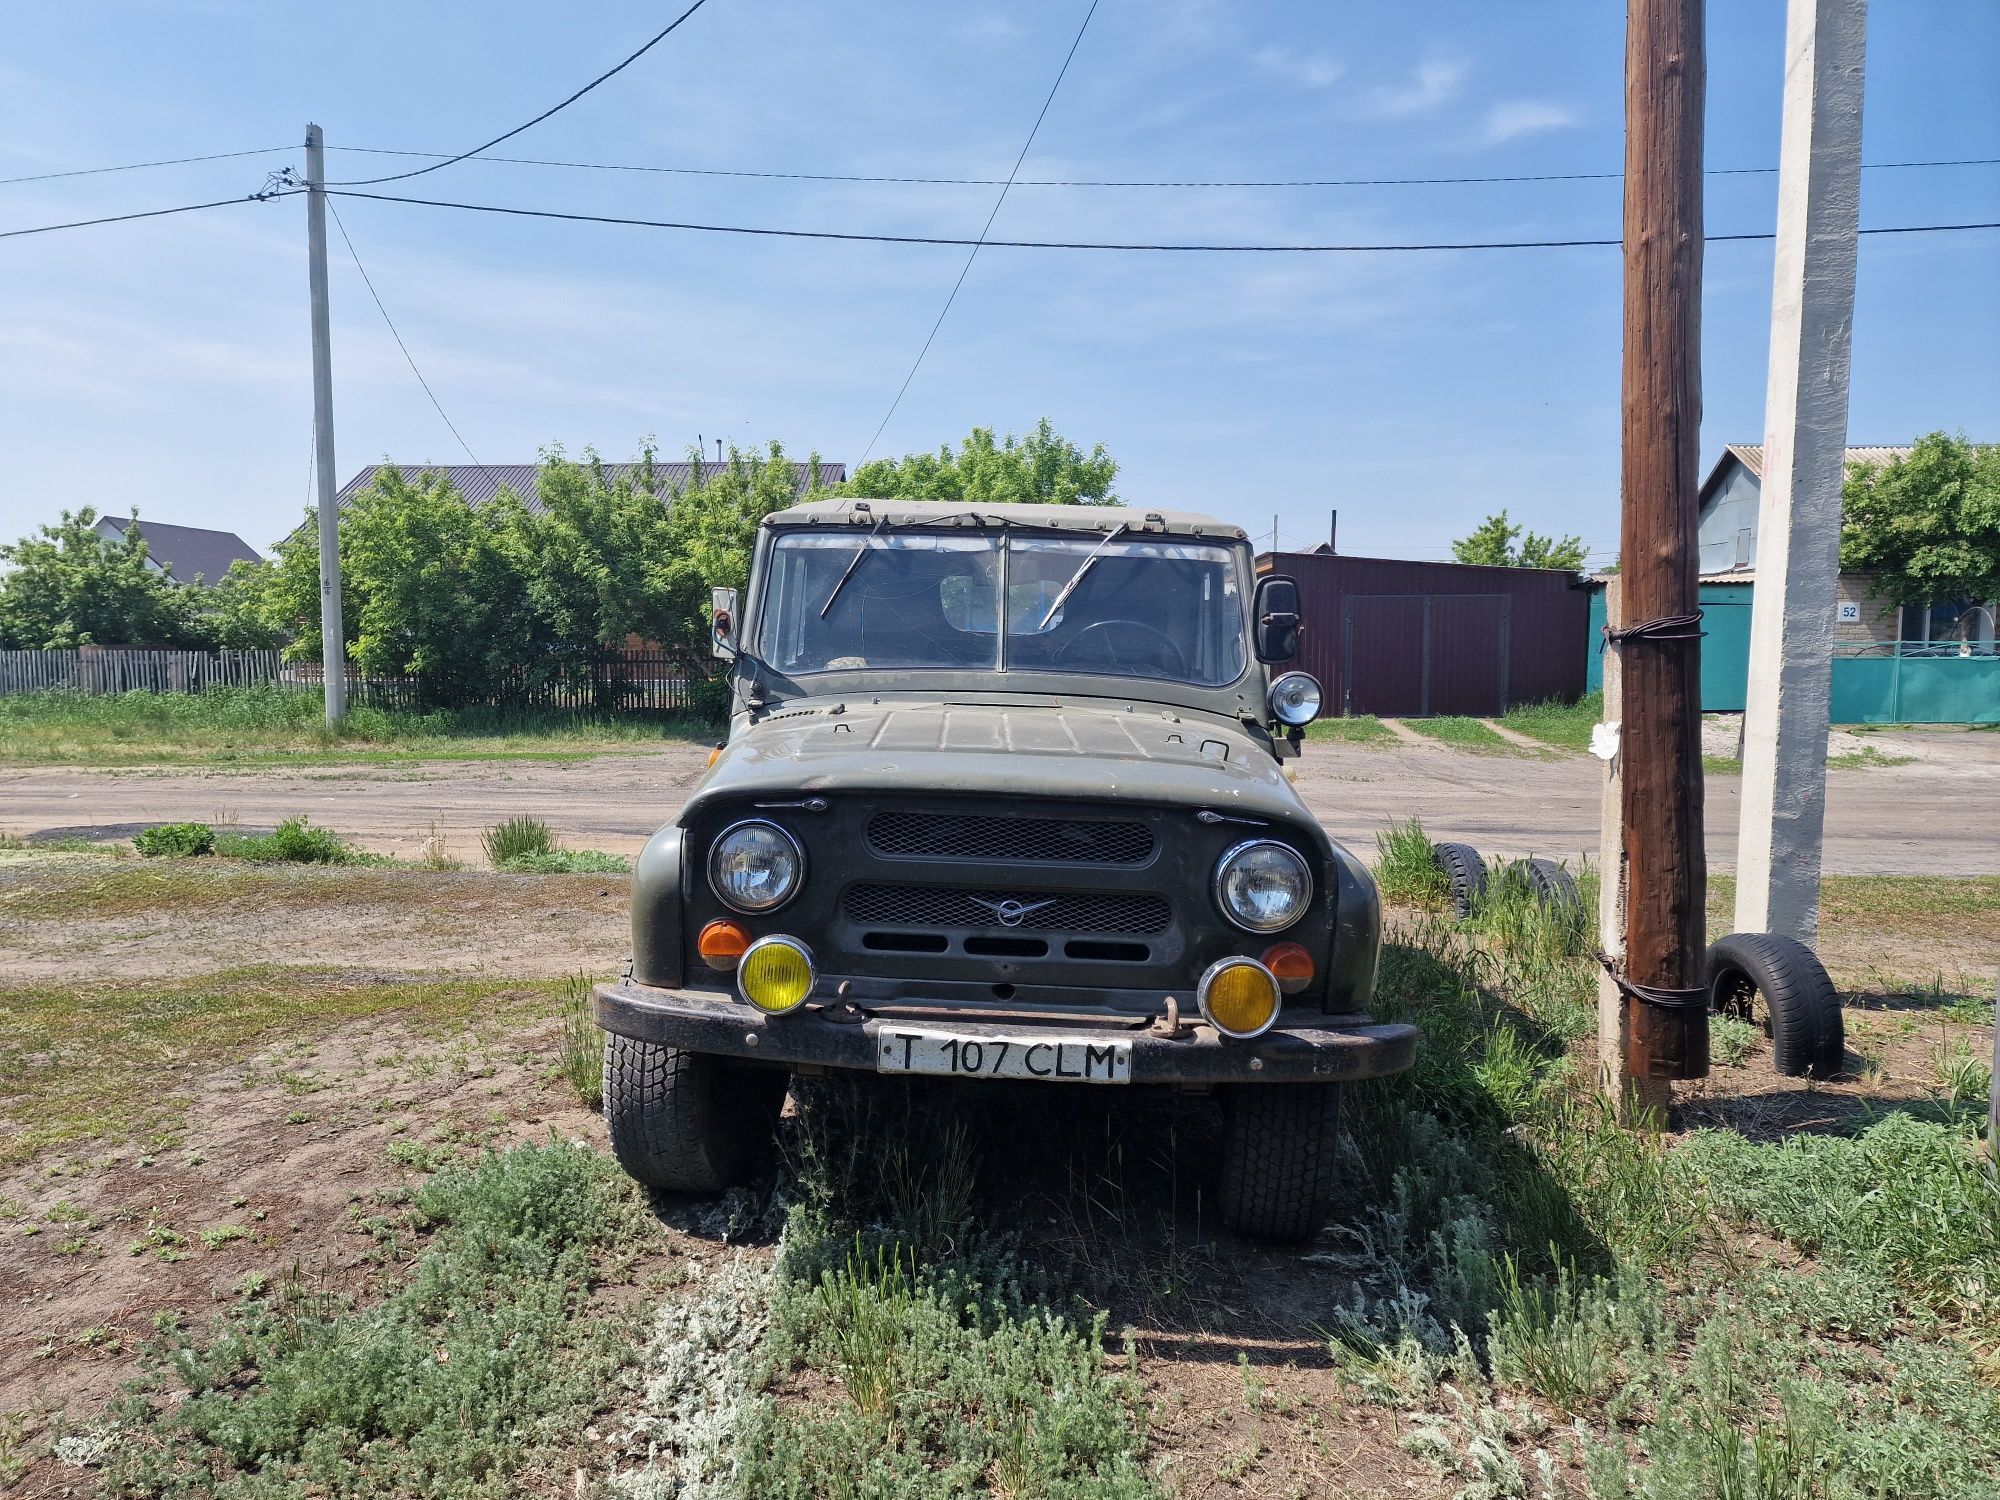 Авто УАЗ 469 Б 1984 год